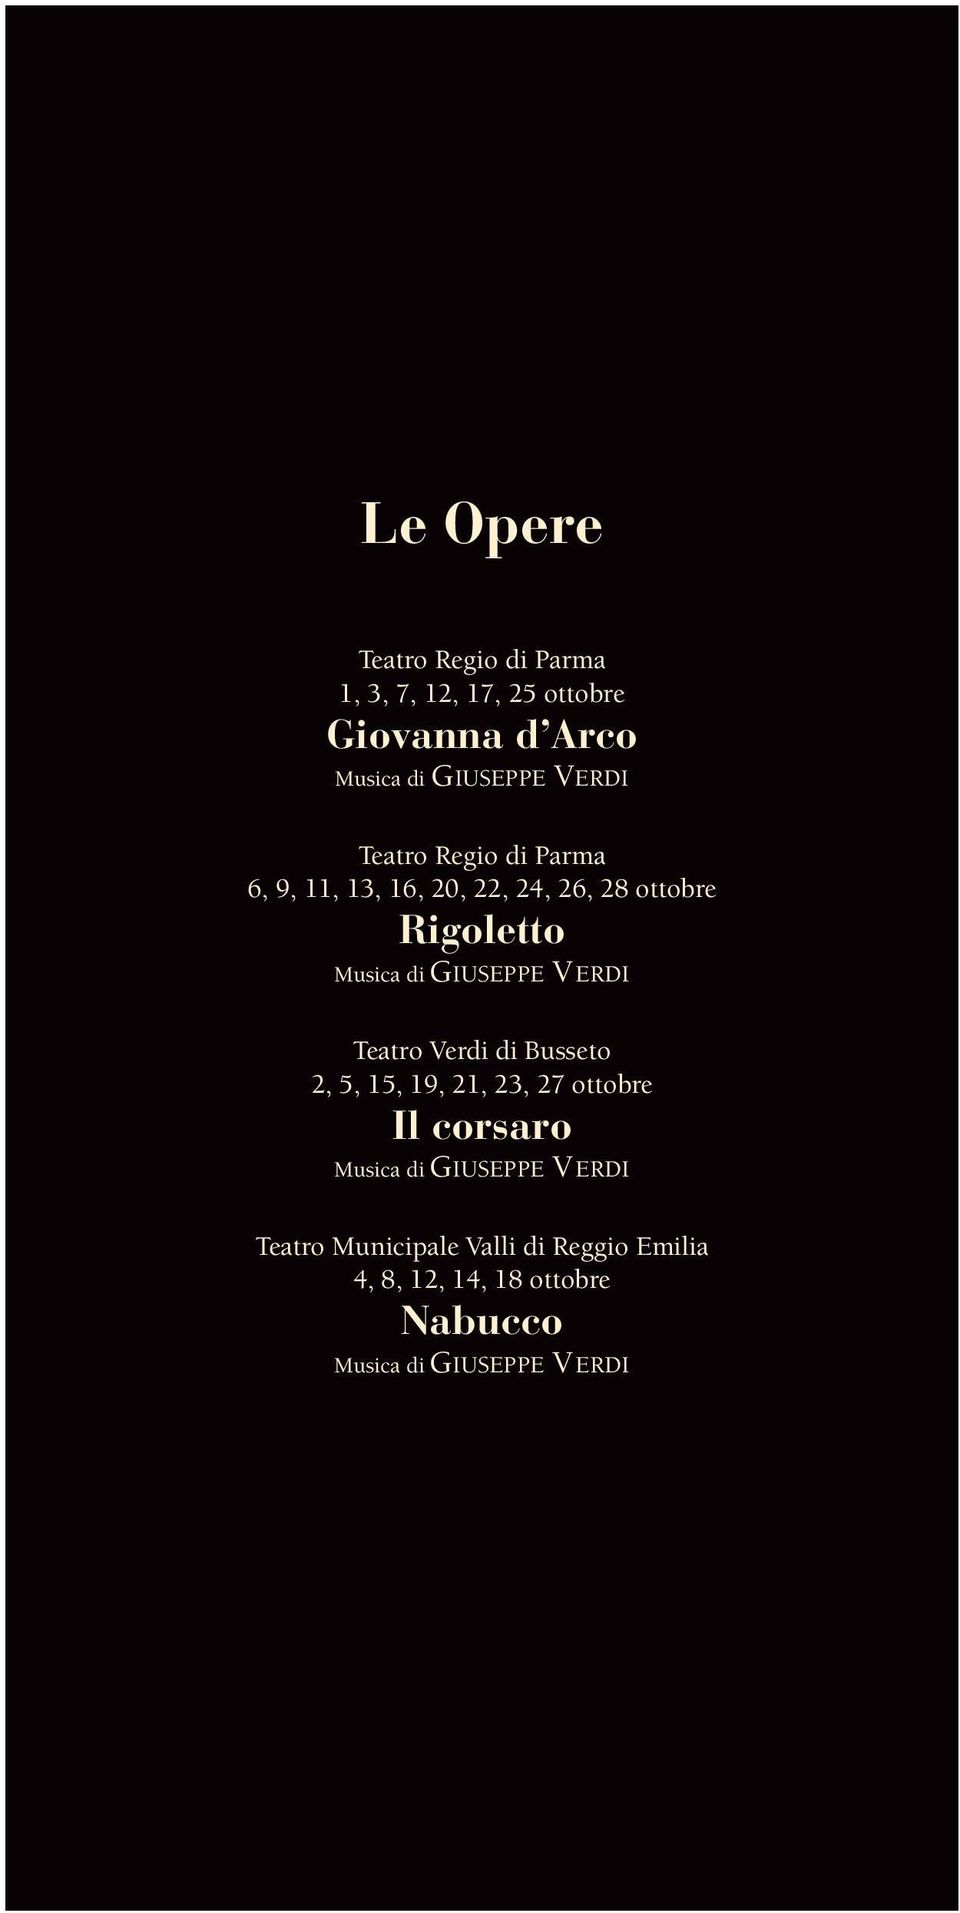 GIUSEPPE VERDI Teatro Verdi di Busseto 2, 5, 15, 19, 21, 23, 27 ottobre Il corsaro Musica di